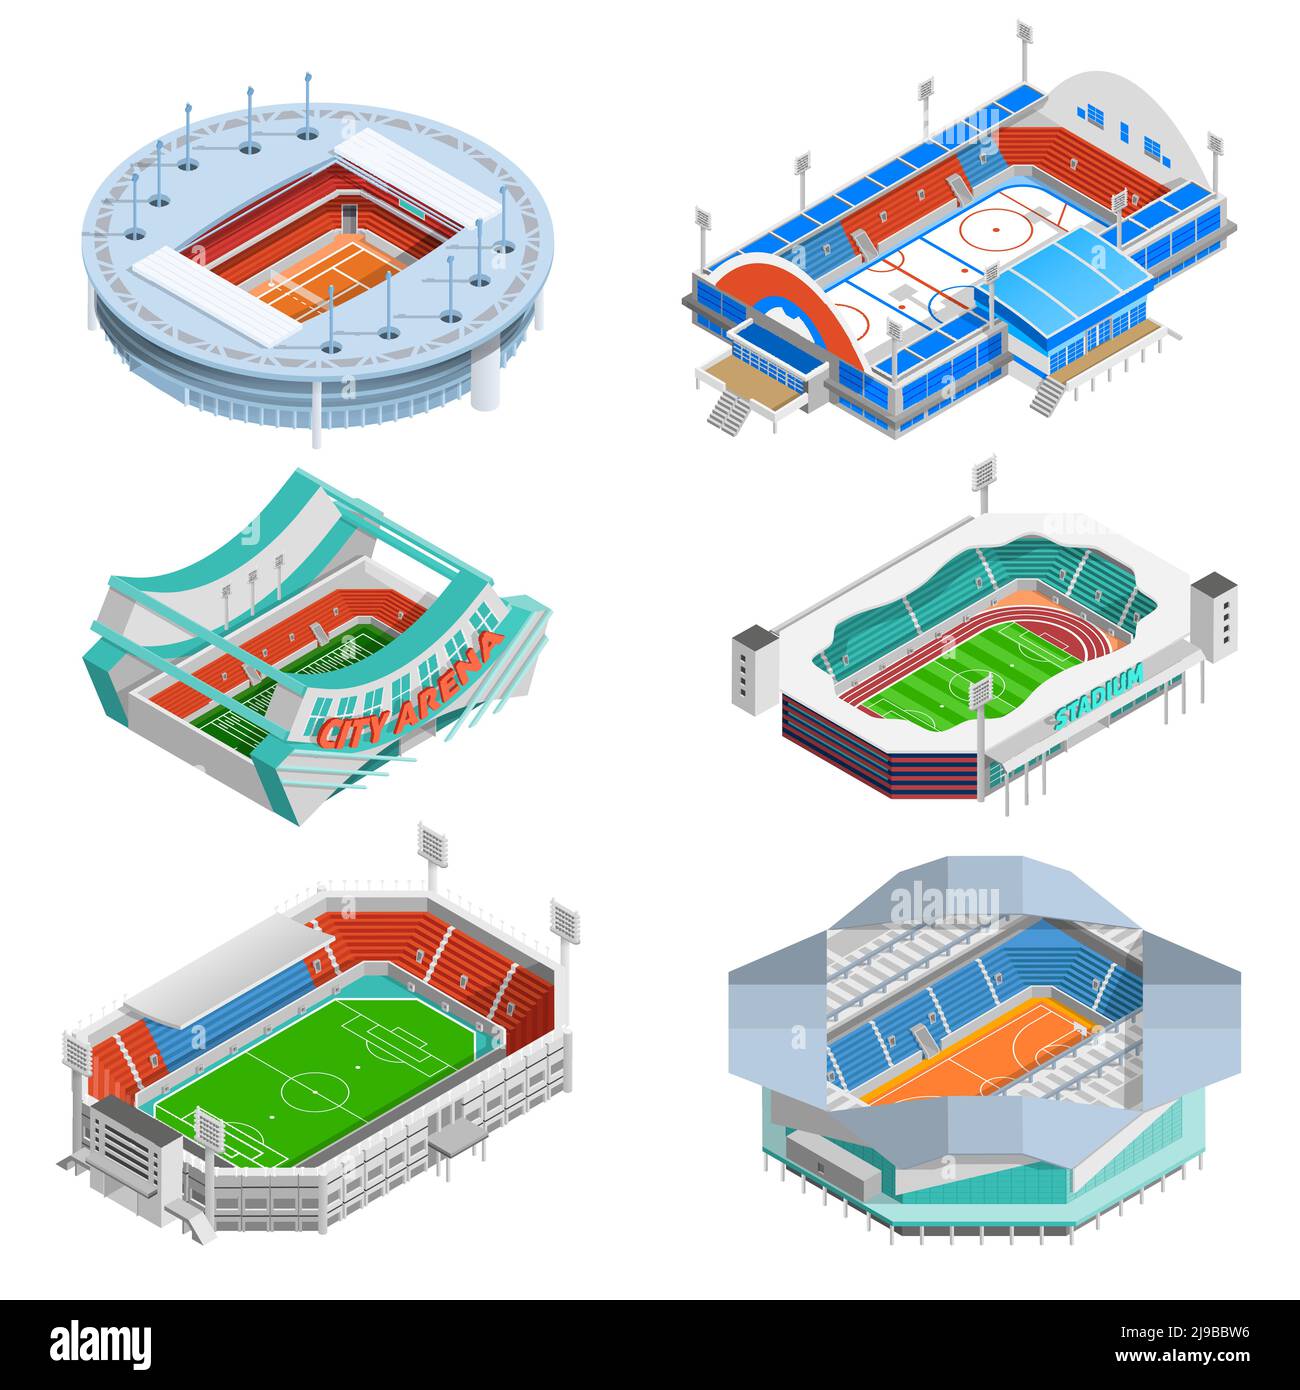 Icone isometriche dello stadio sportivo con stadi di calcio e hockey illustrazione vettoriale isolata Illustrazione Vettoriale